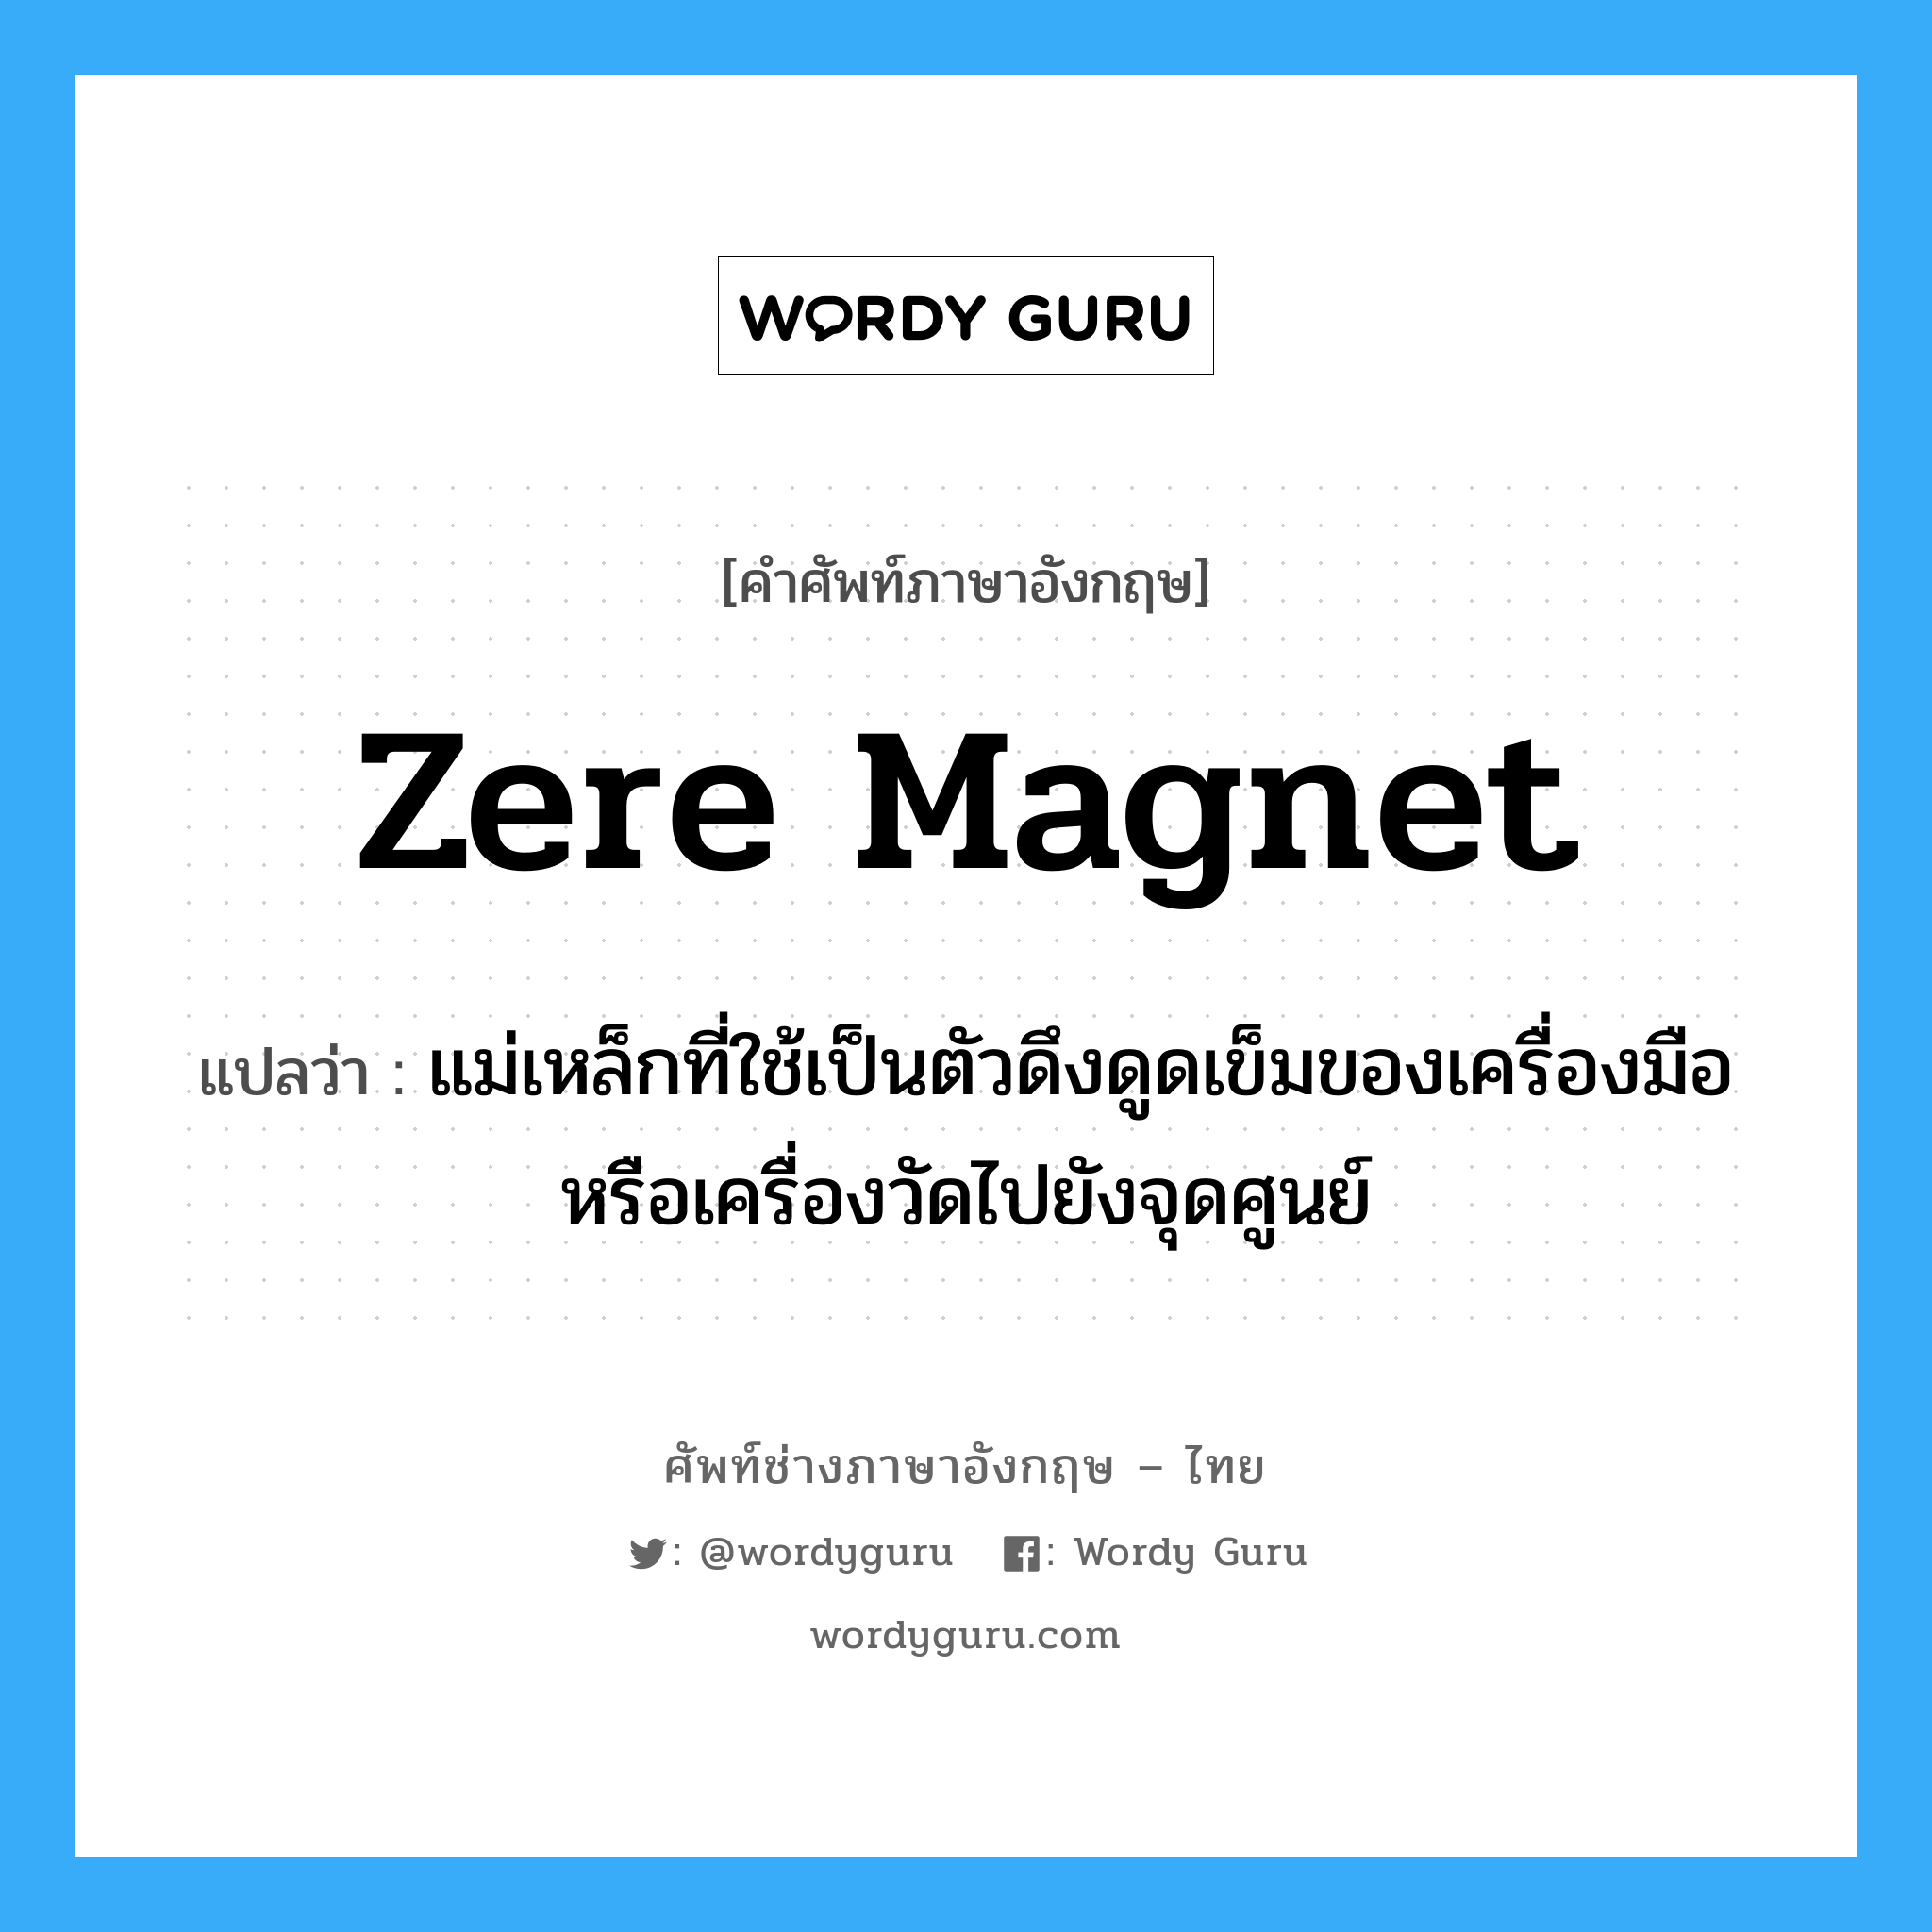 zere magnet แปลว่า?, คำศัพท์ช่างภาษาอังกฤษ - ไทย zere magnet คำศัพท์ภาษาอังกฤษ zere magnet แปลว่า แม่เหล็กที่ใช้เป็นตัวดึงดูดเข็มของเครื่องมือหรือเครื่องวัดไปยังจุดศูนย์